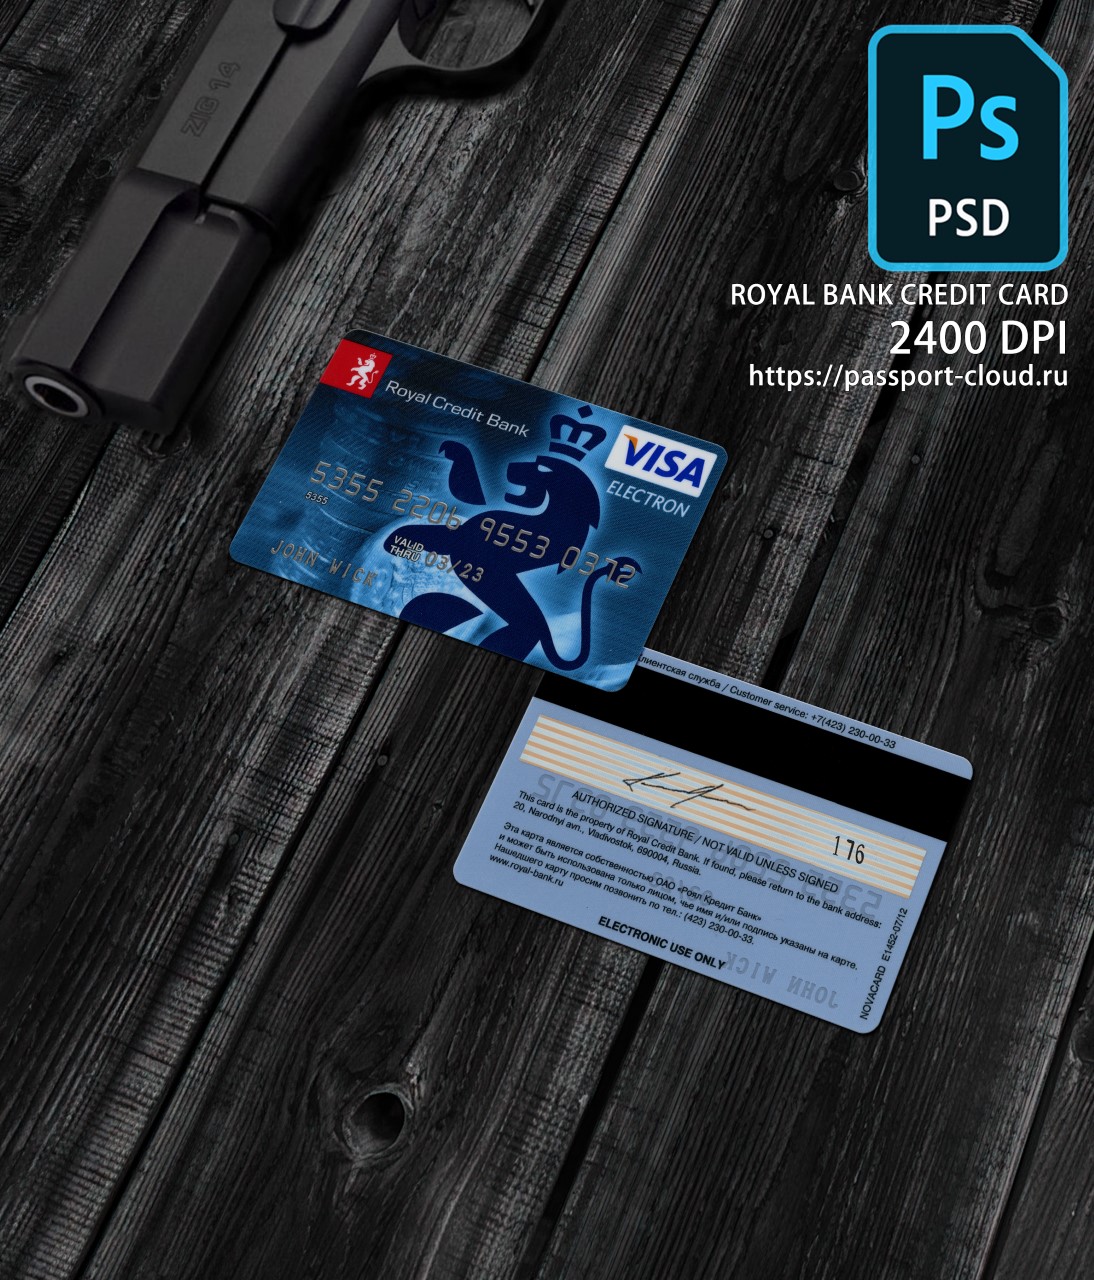 Royal Bank Credit Card PSD1